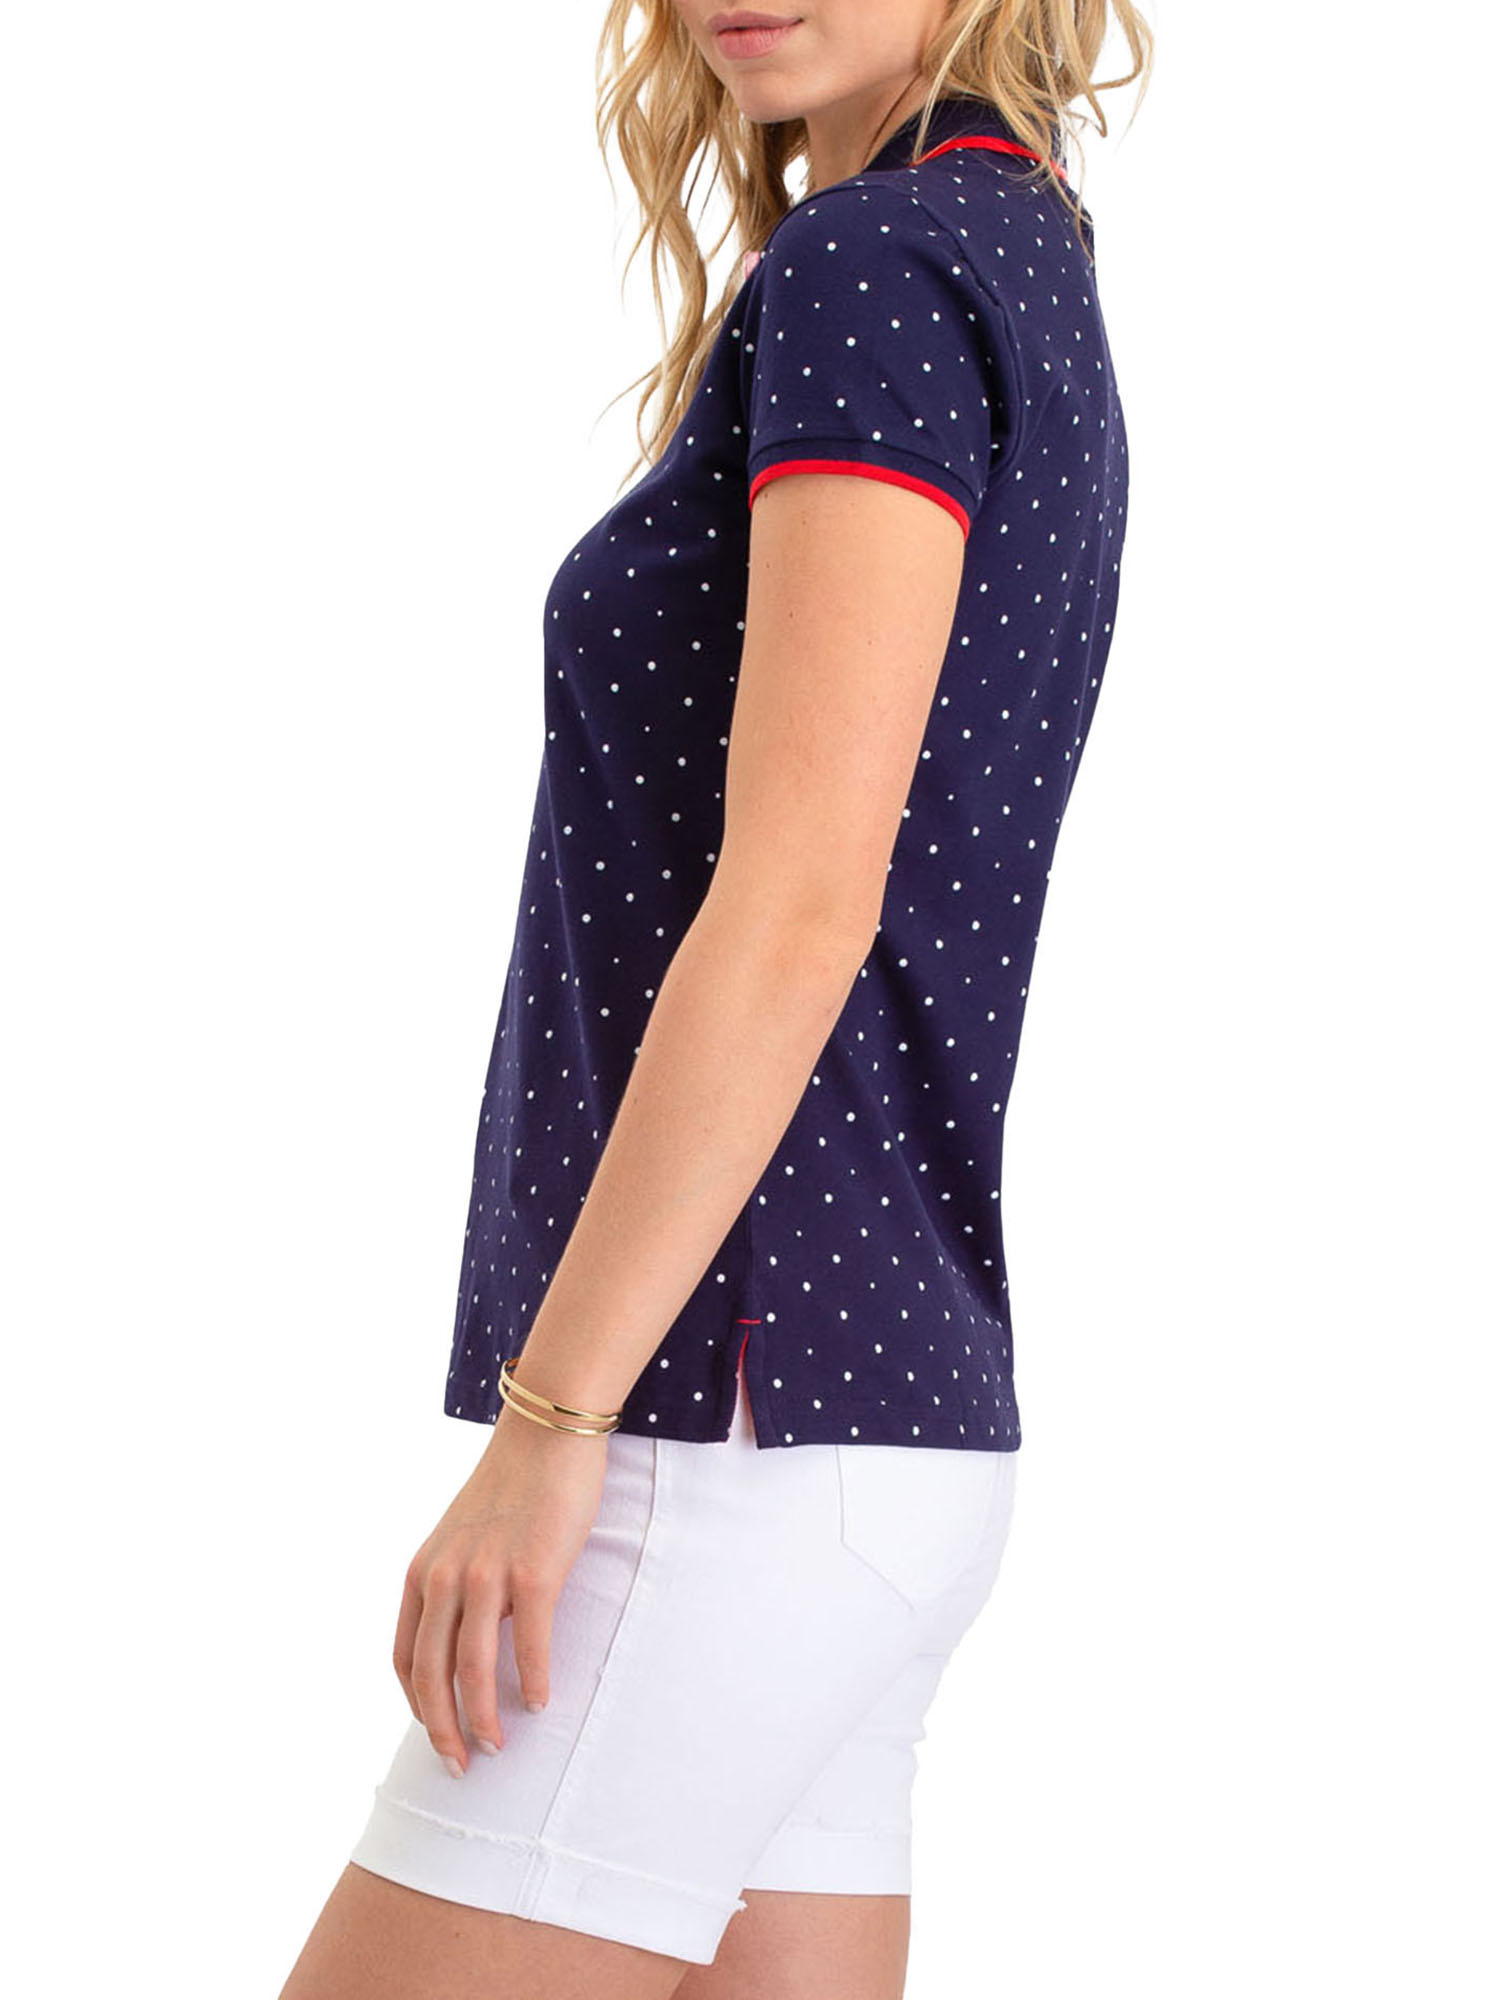 US Polo Assn. Classic Polo Dot Pique Short Sleeve Shirt, Women's - image 3 of 4